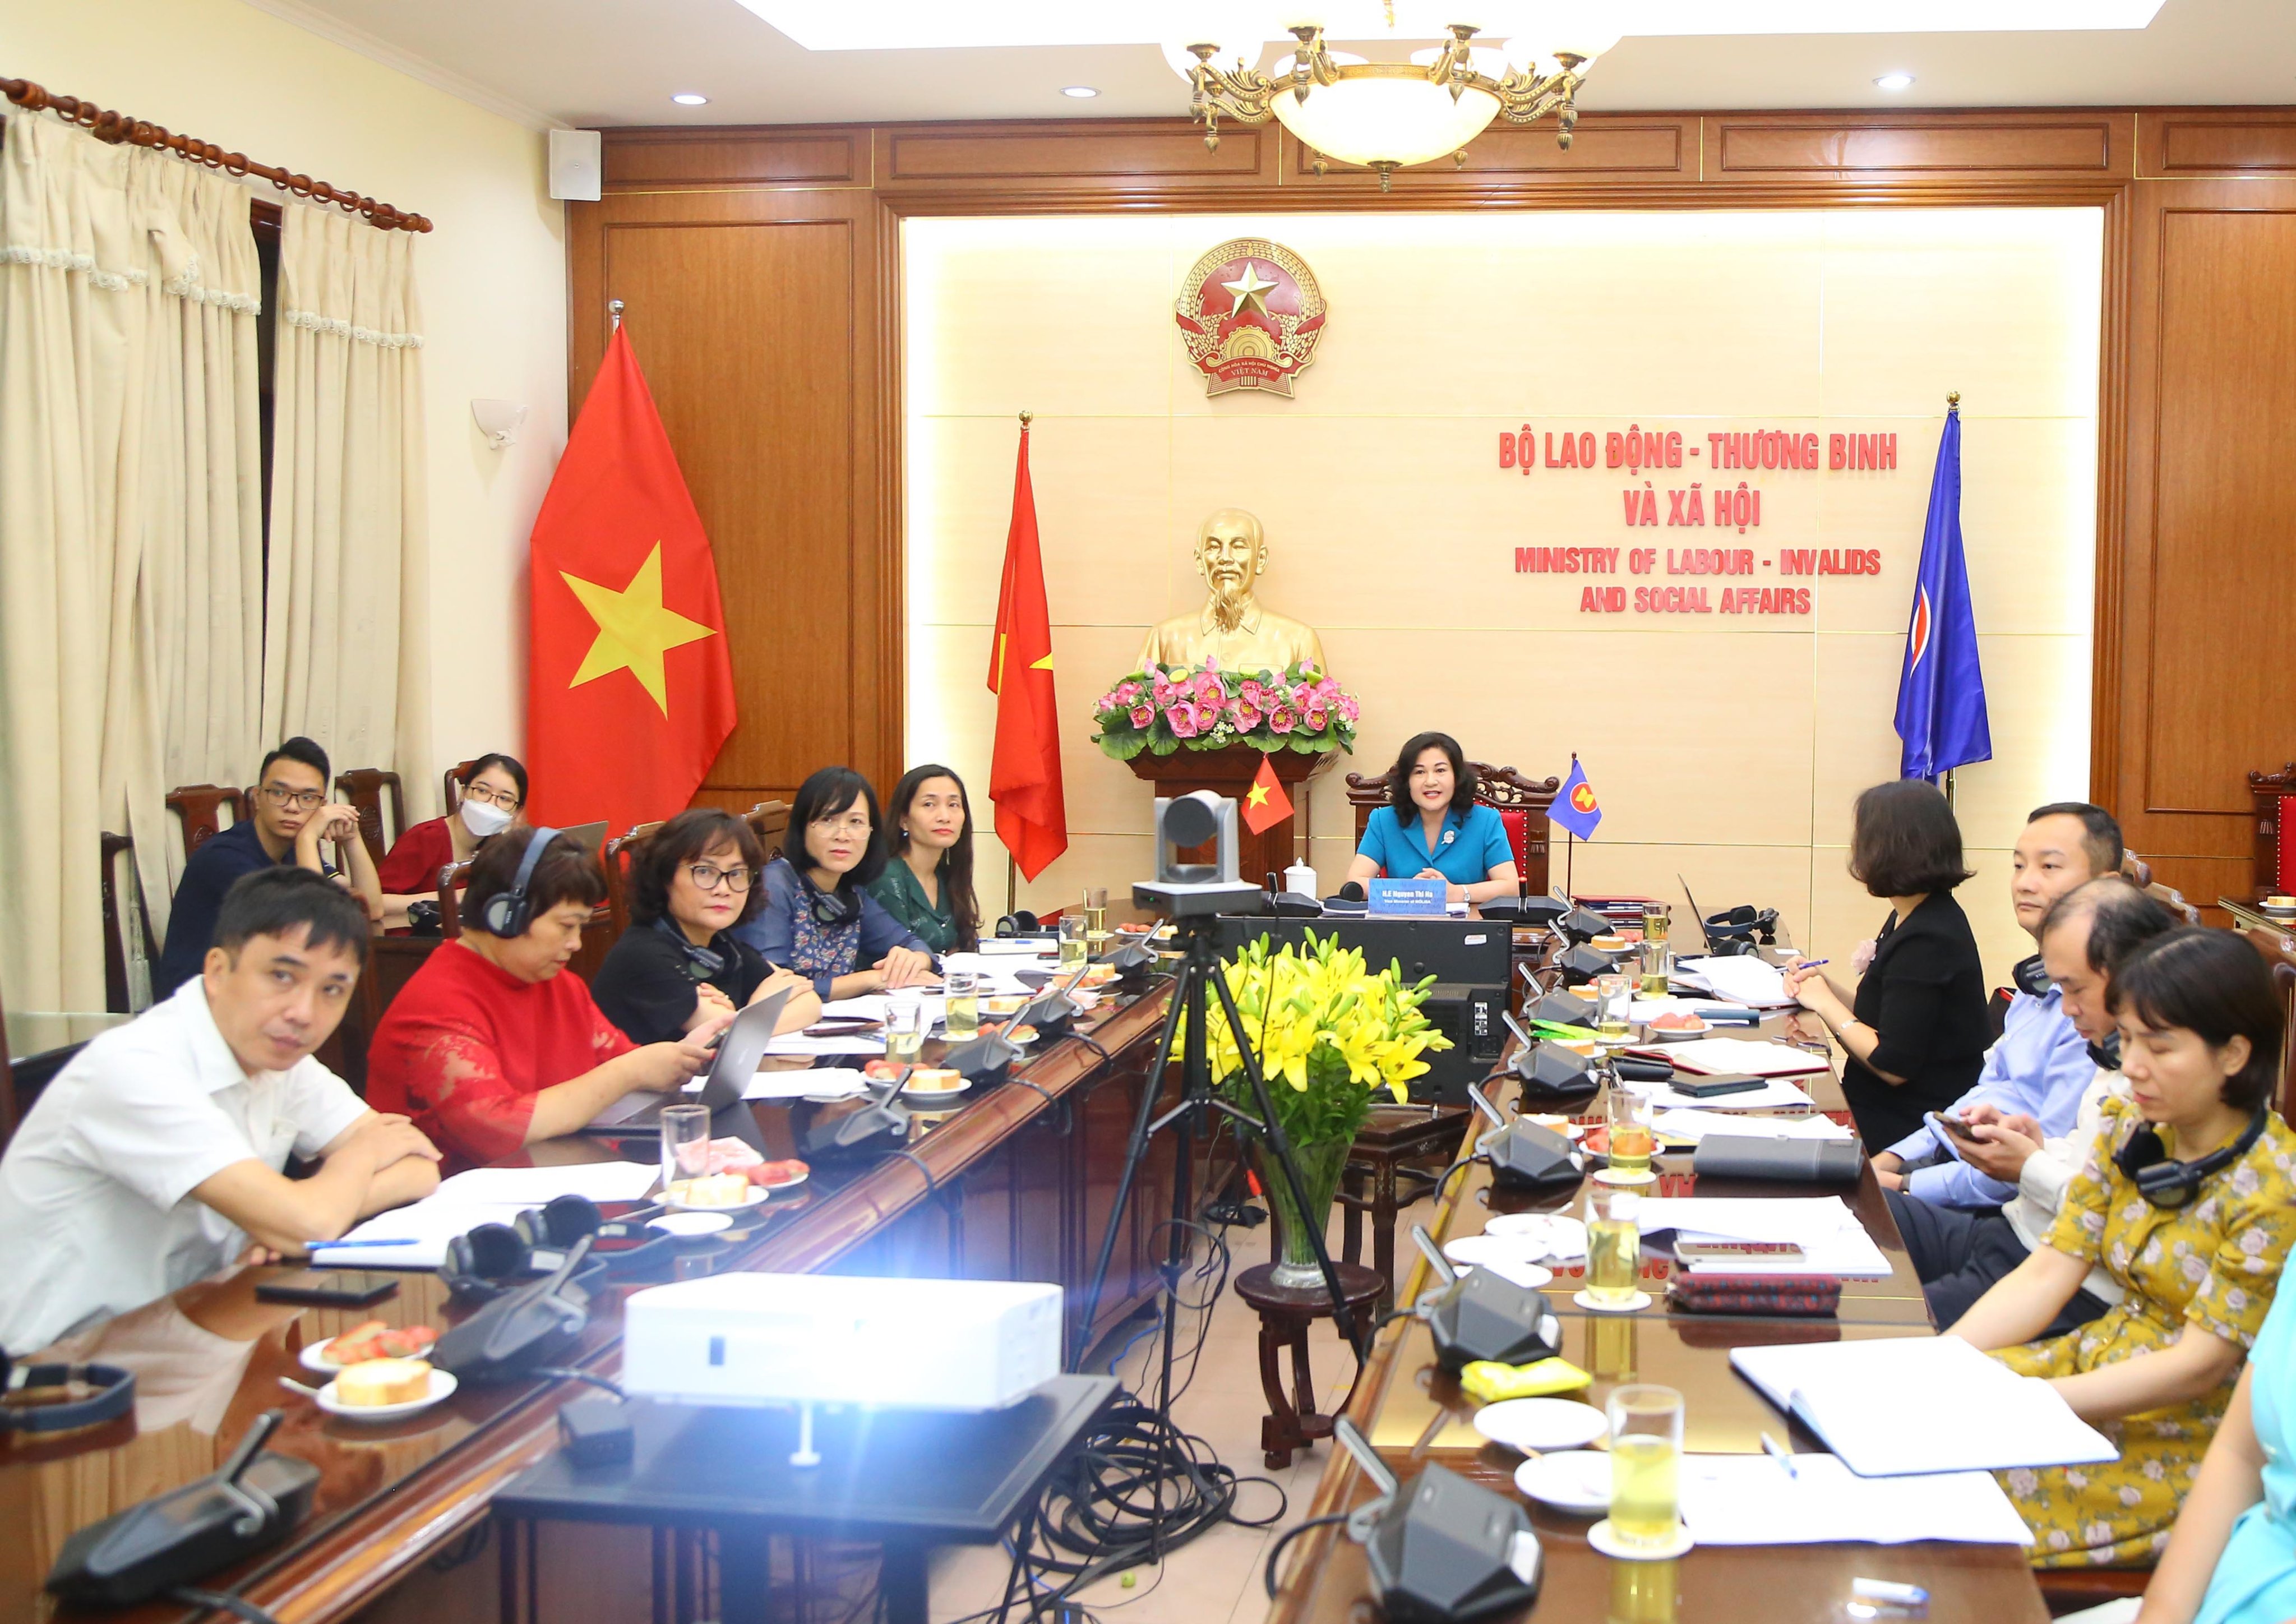 Việt Nam cam kết thúc đẩy bình đẳng giới trong lĩnh vực lao động, việc làm